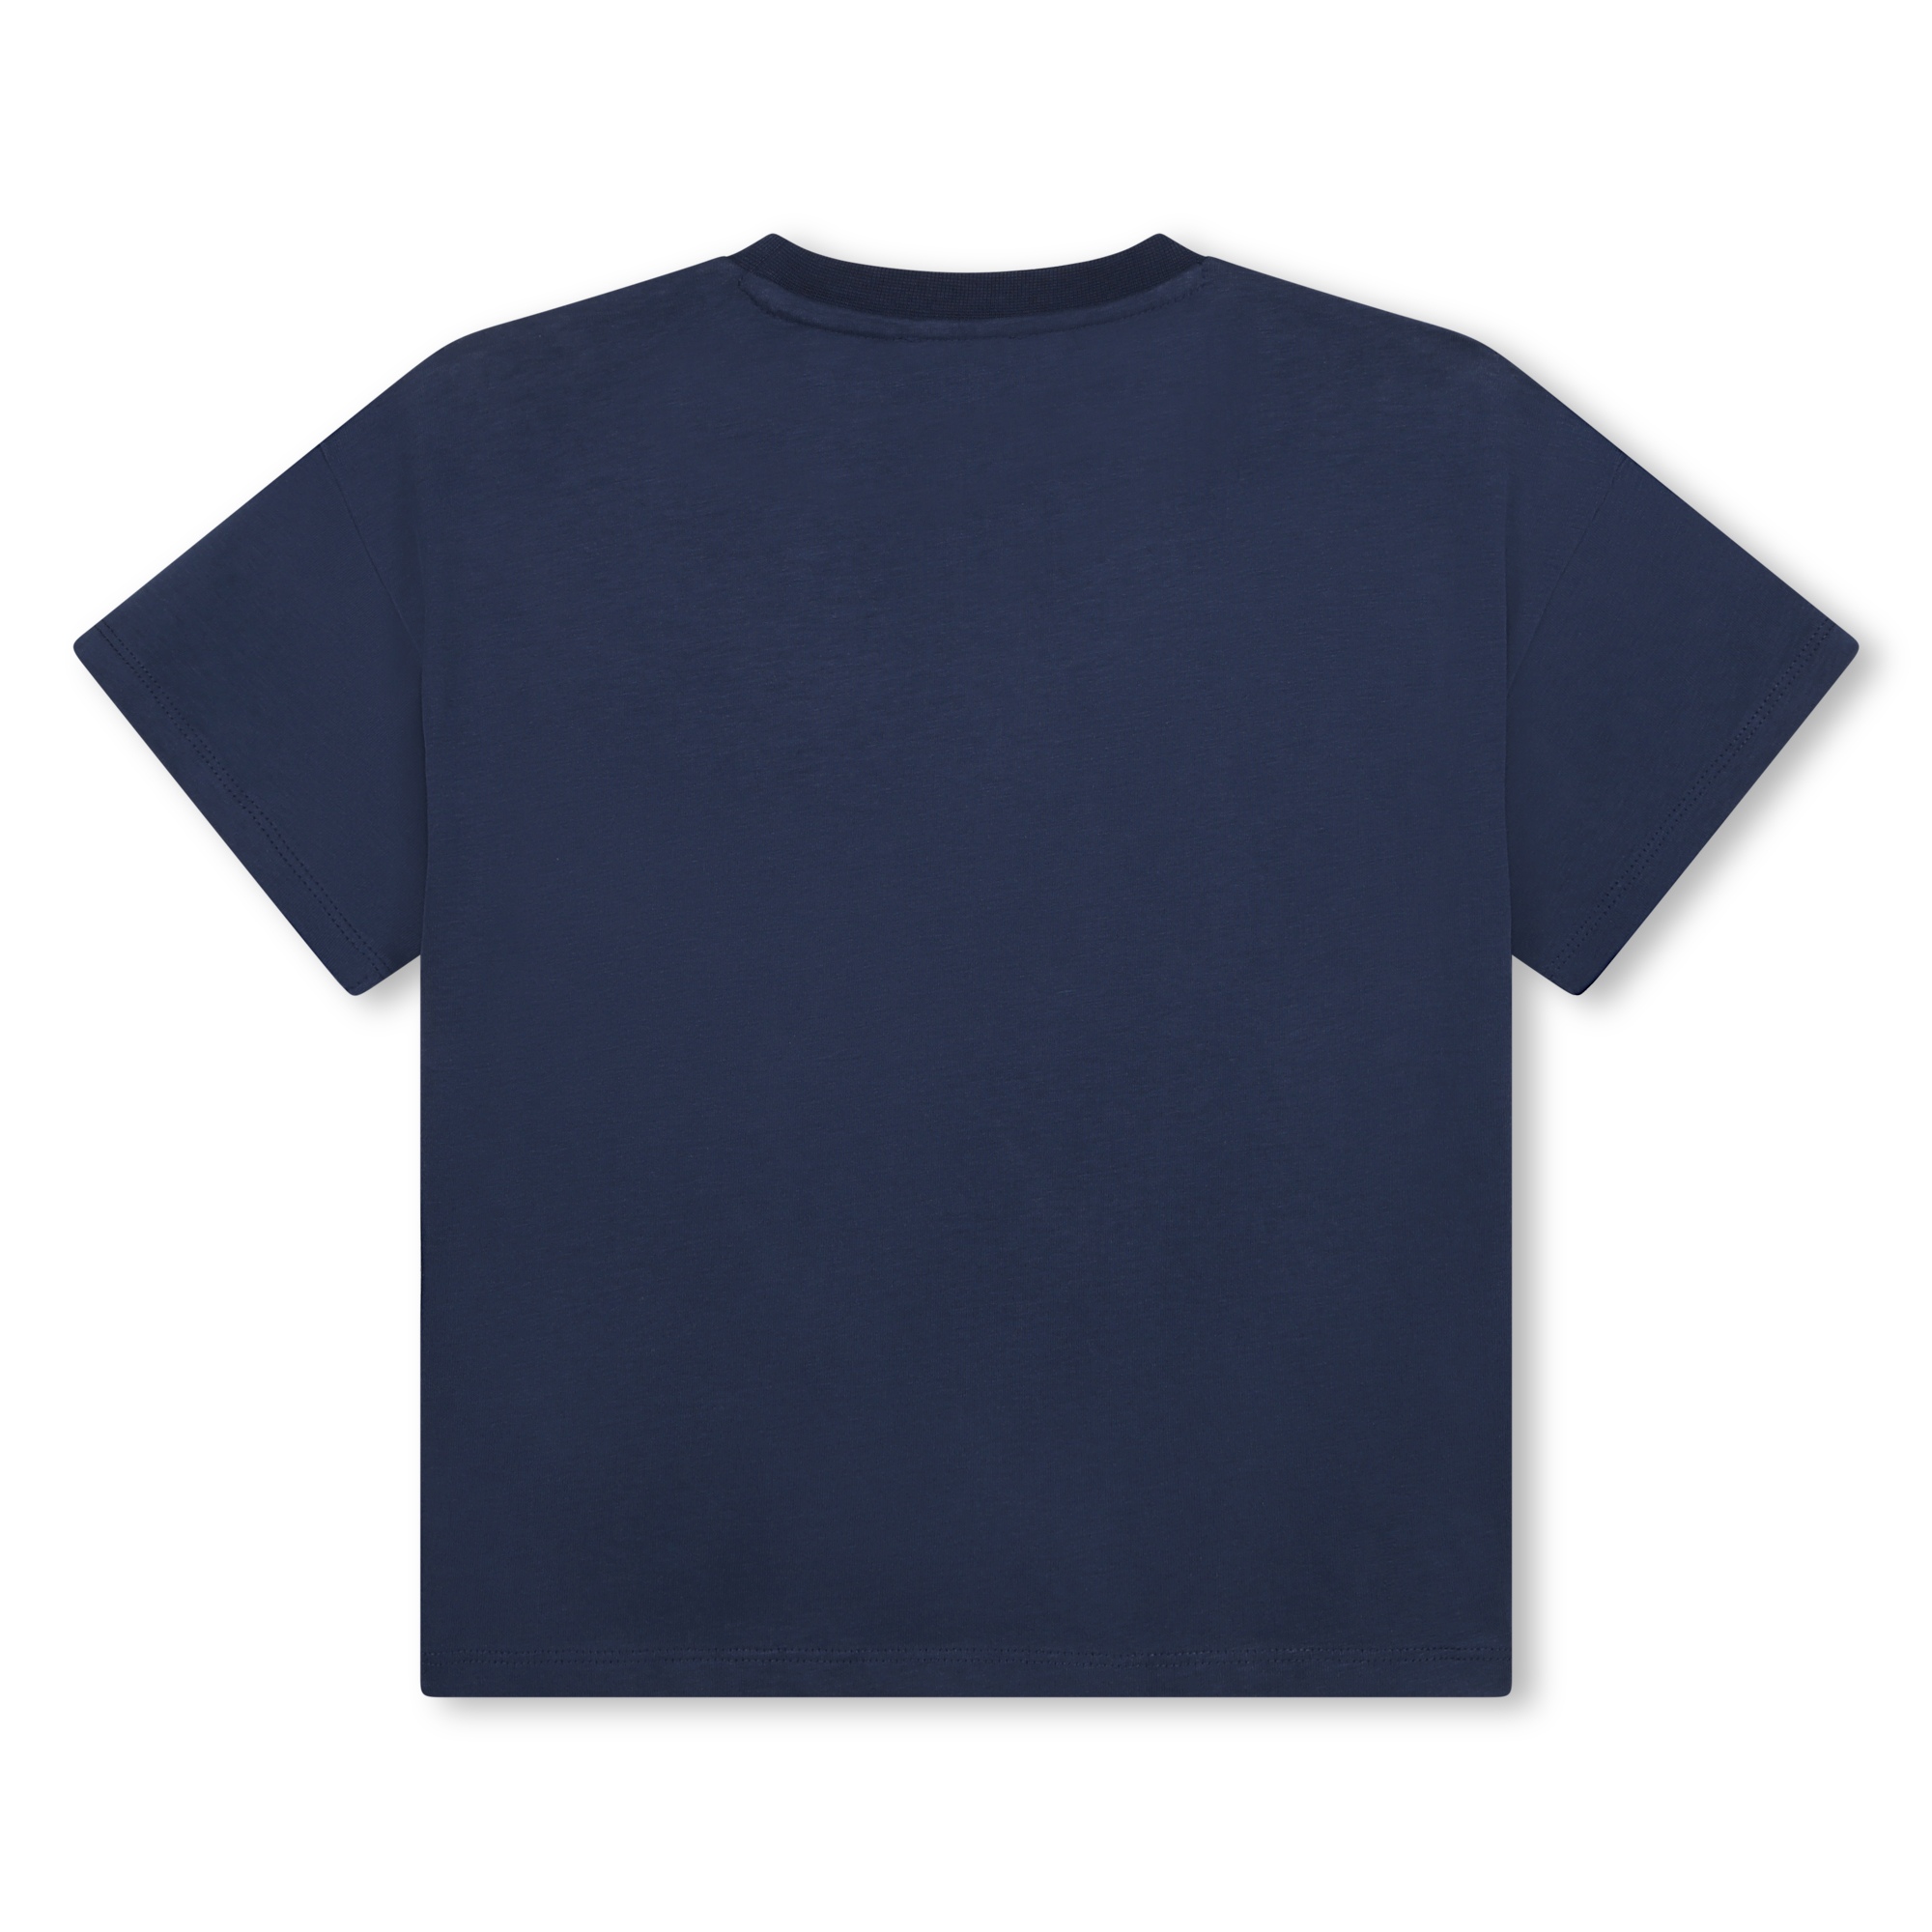 Kurzarm-T-Shirt KENZO KIDS Für JUNGE